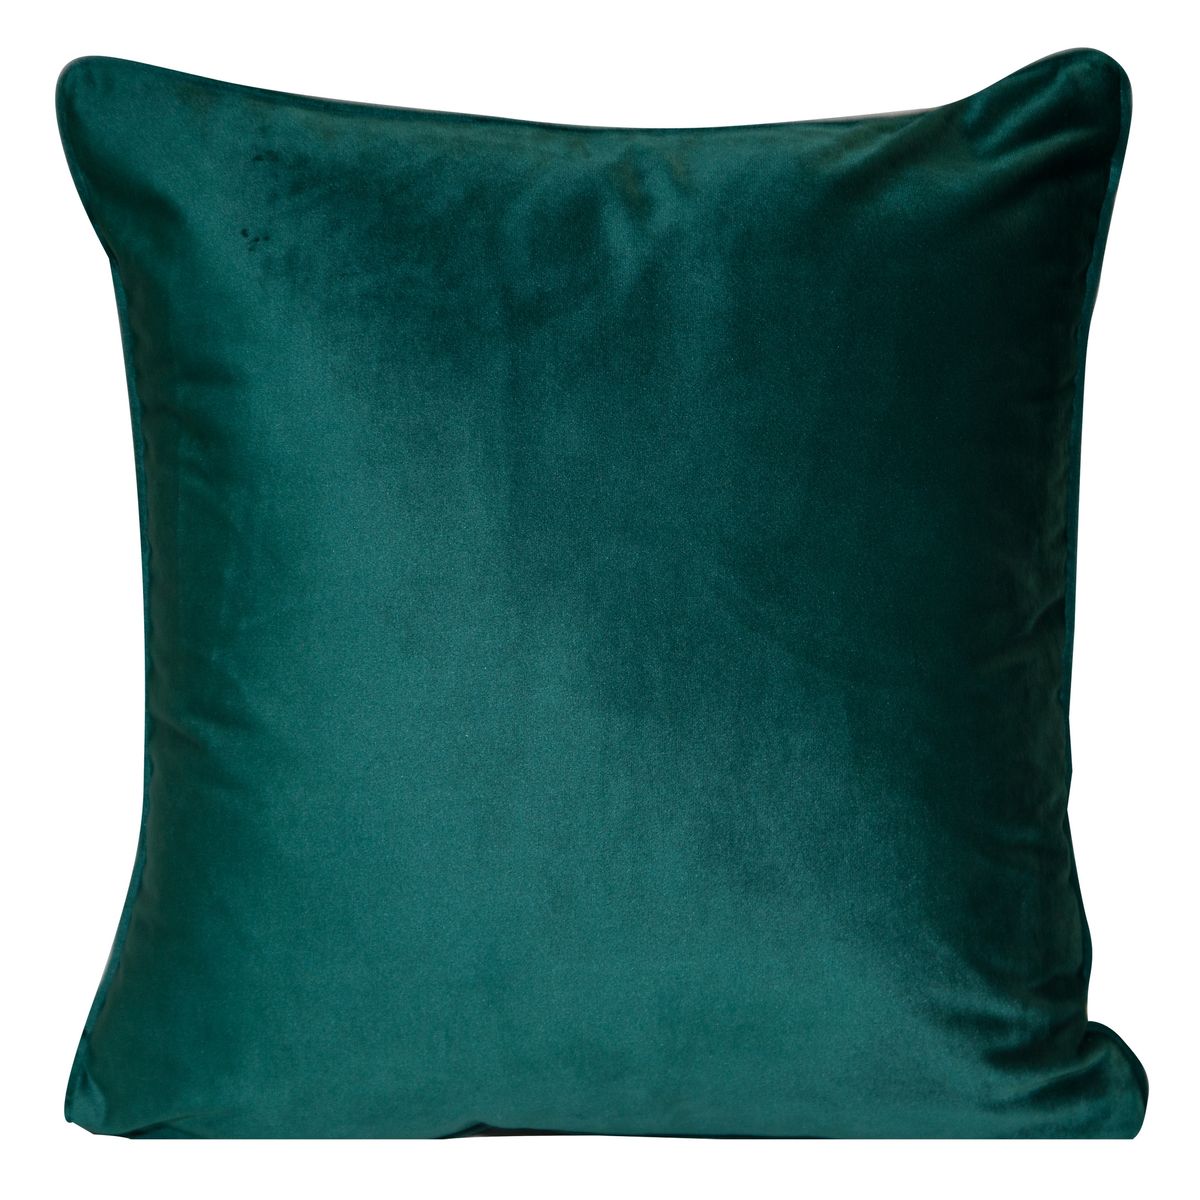 Dekoratyvinė aksominė pagalvėlė “Sibel” smaragdinė, 2 vnt.